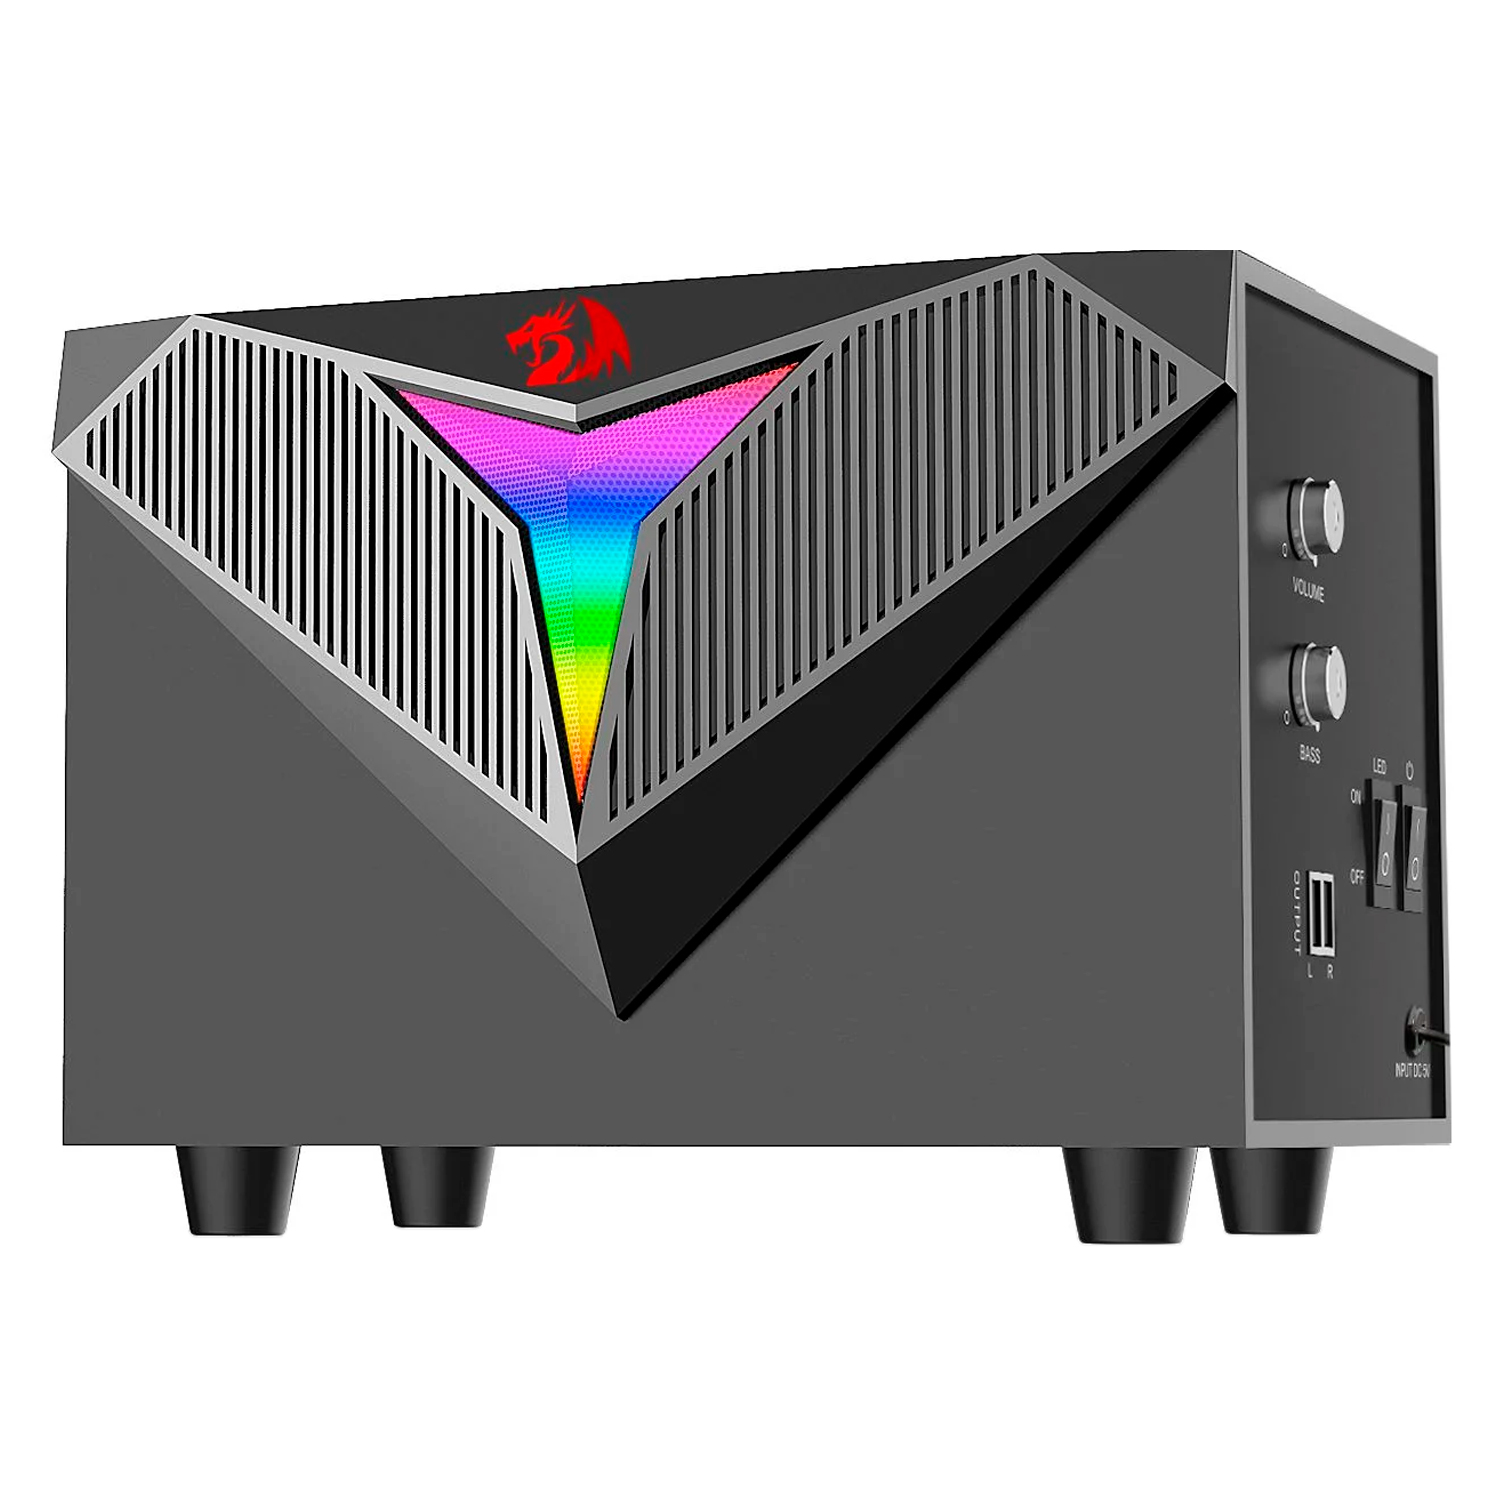 Caixas de Som e Subwoofer Gamer Redragon Toccata GS700 RGB P2 USB Auxiliar - Preto